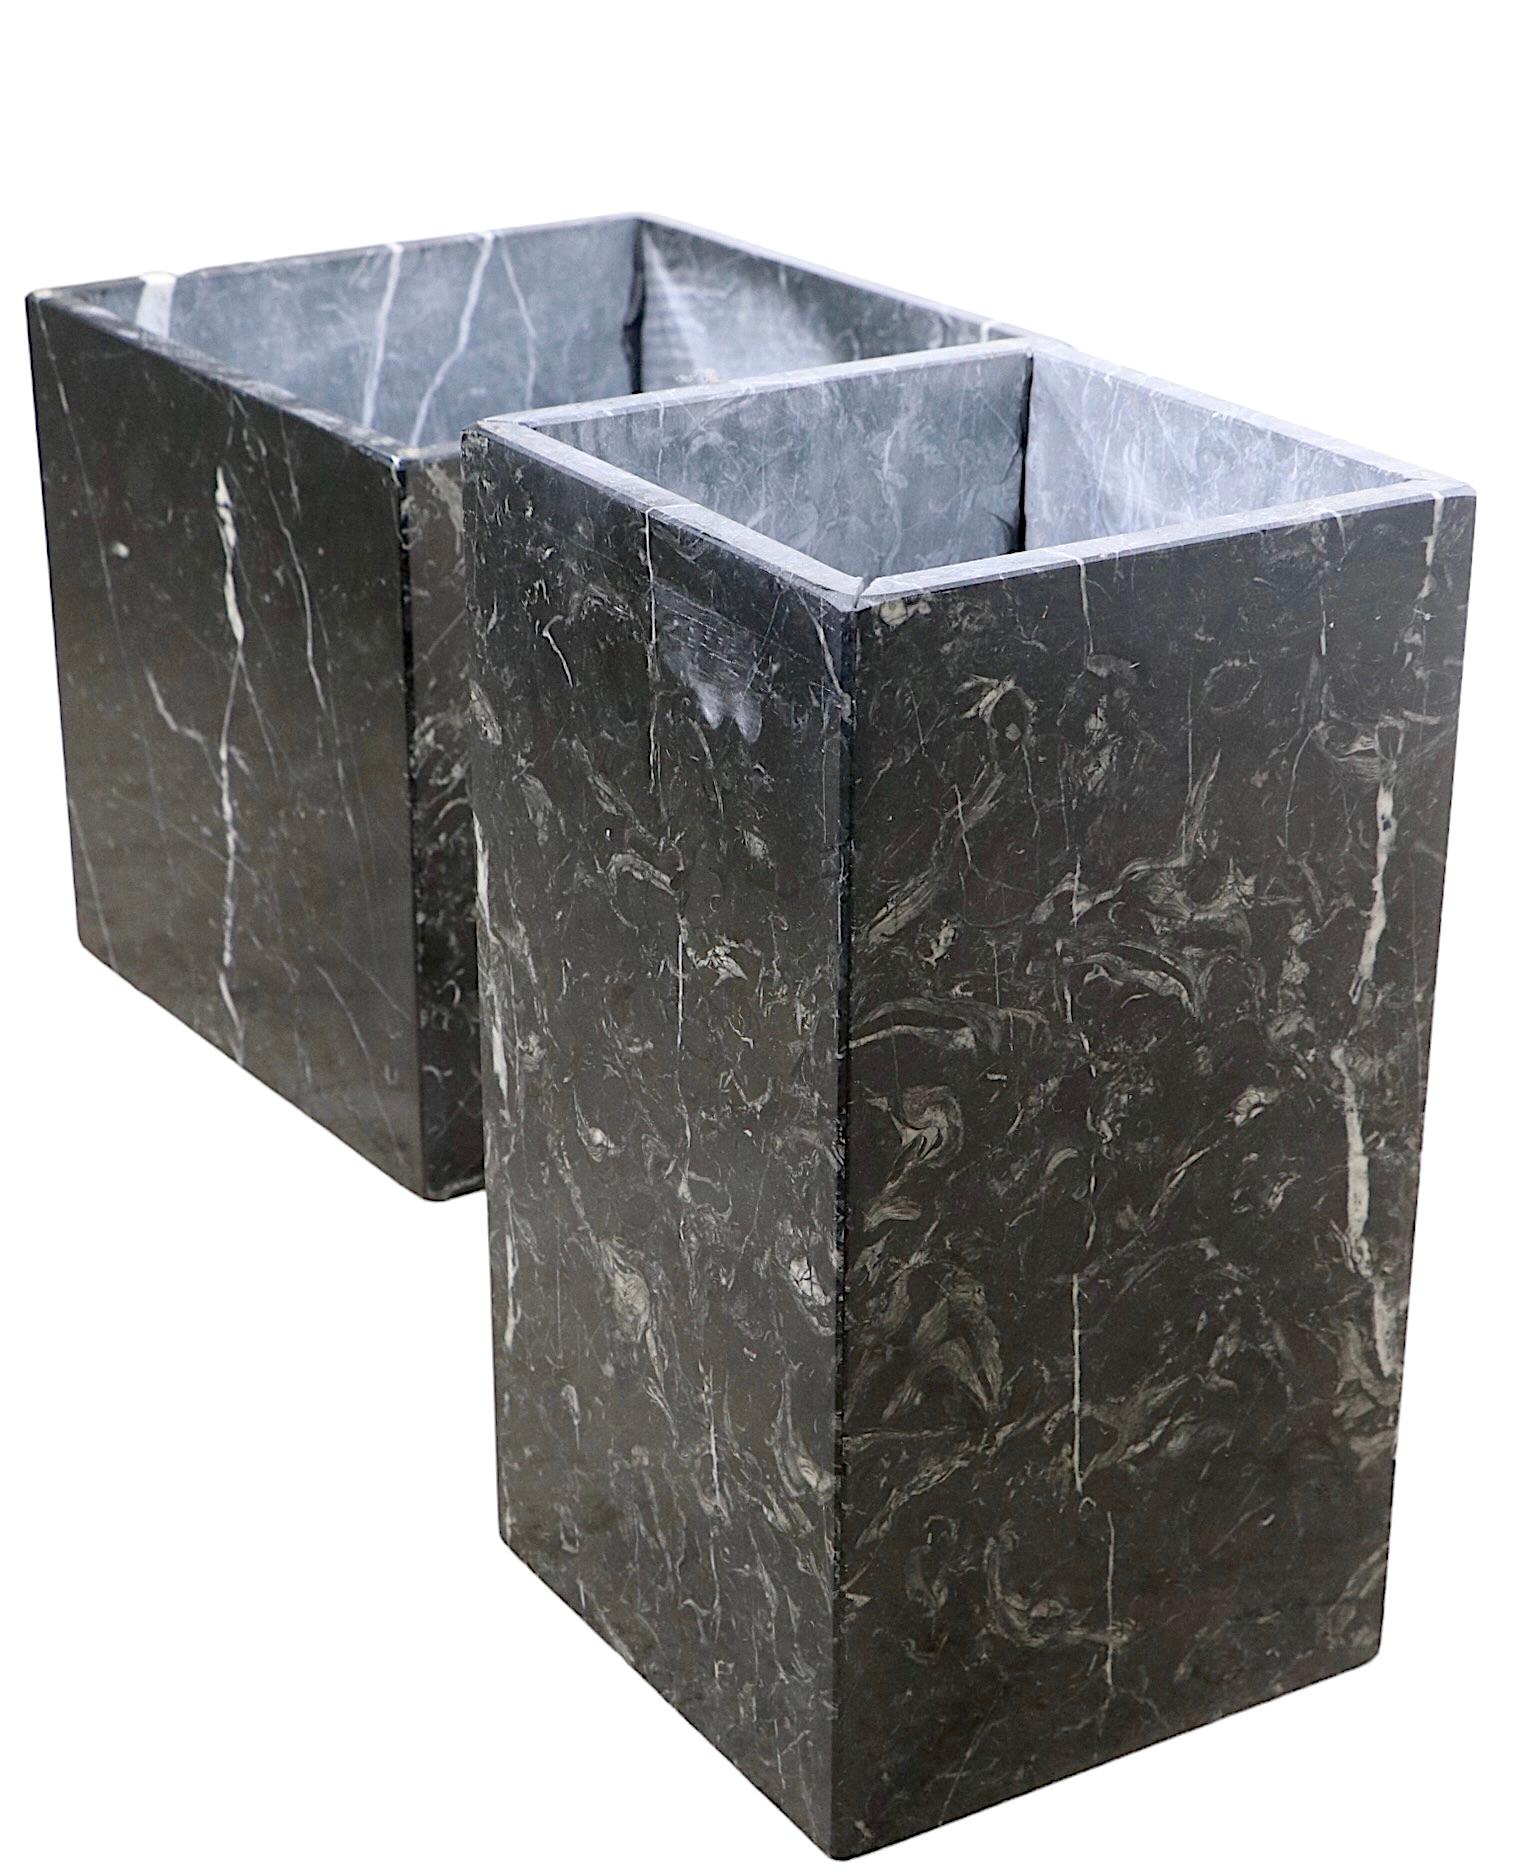 2 bases à piédestal en marbre noir - Bases de table - Jardinières - vers les années 1960/1970 1